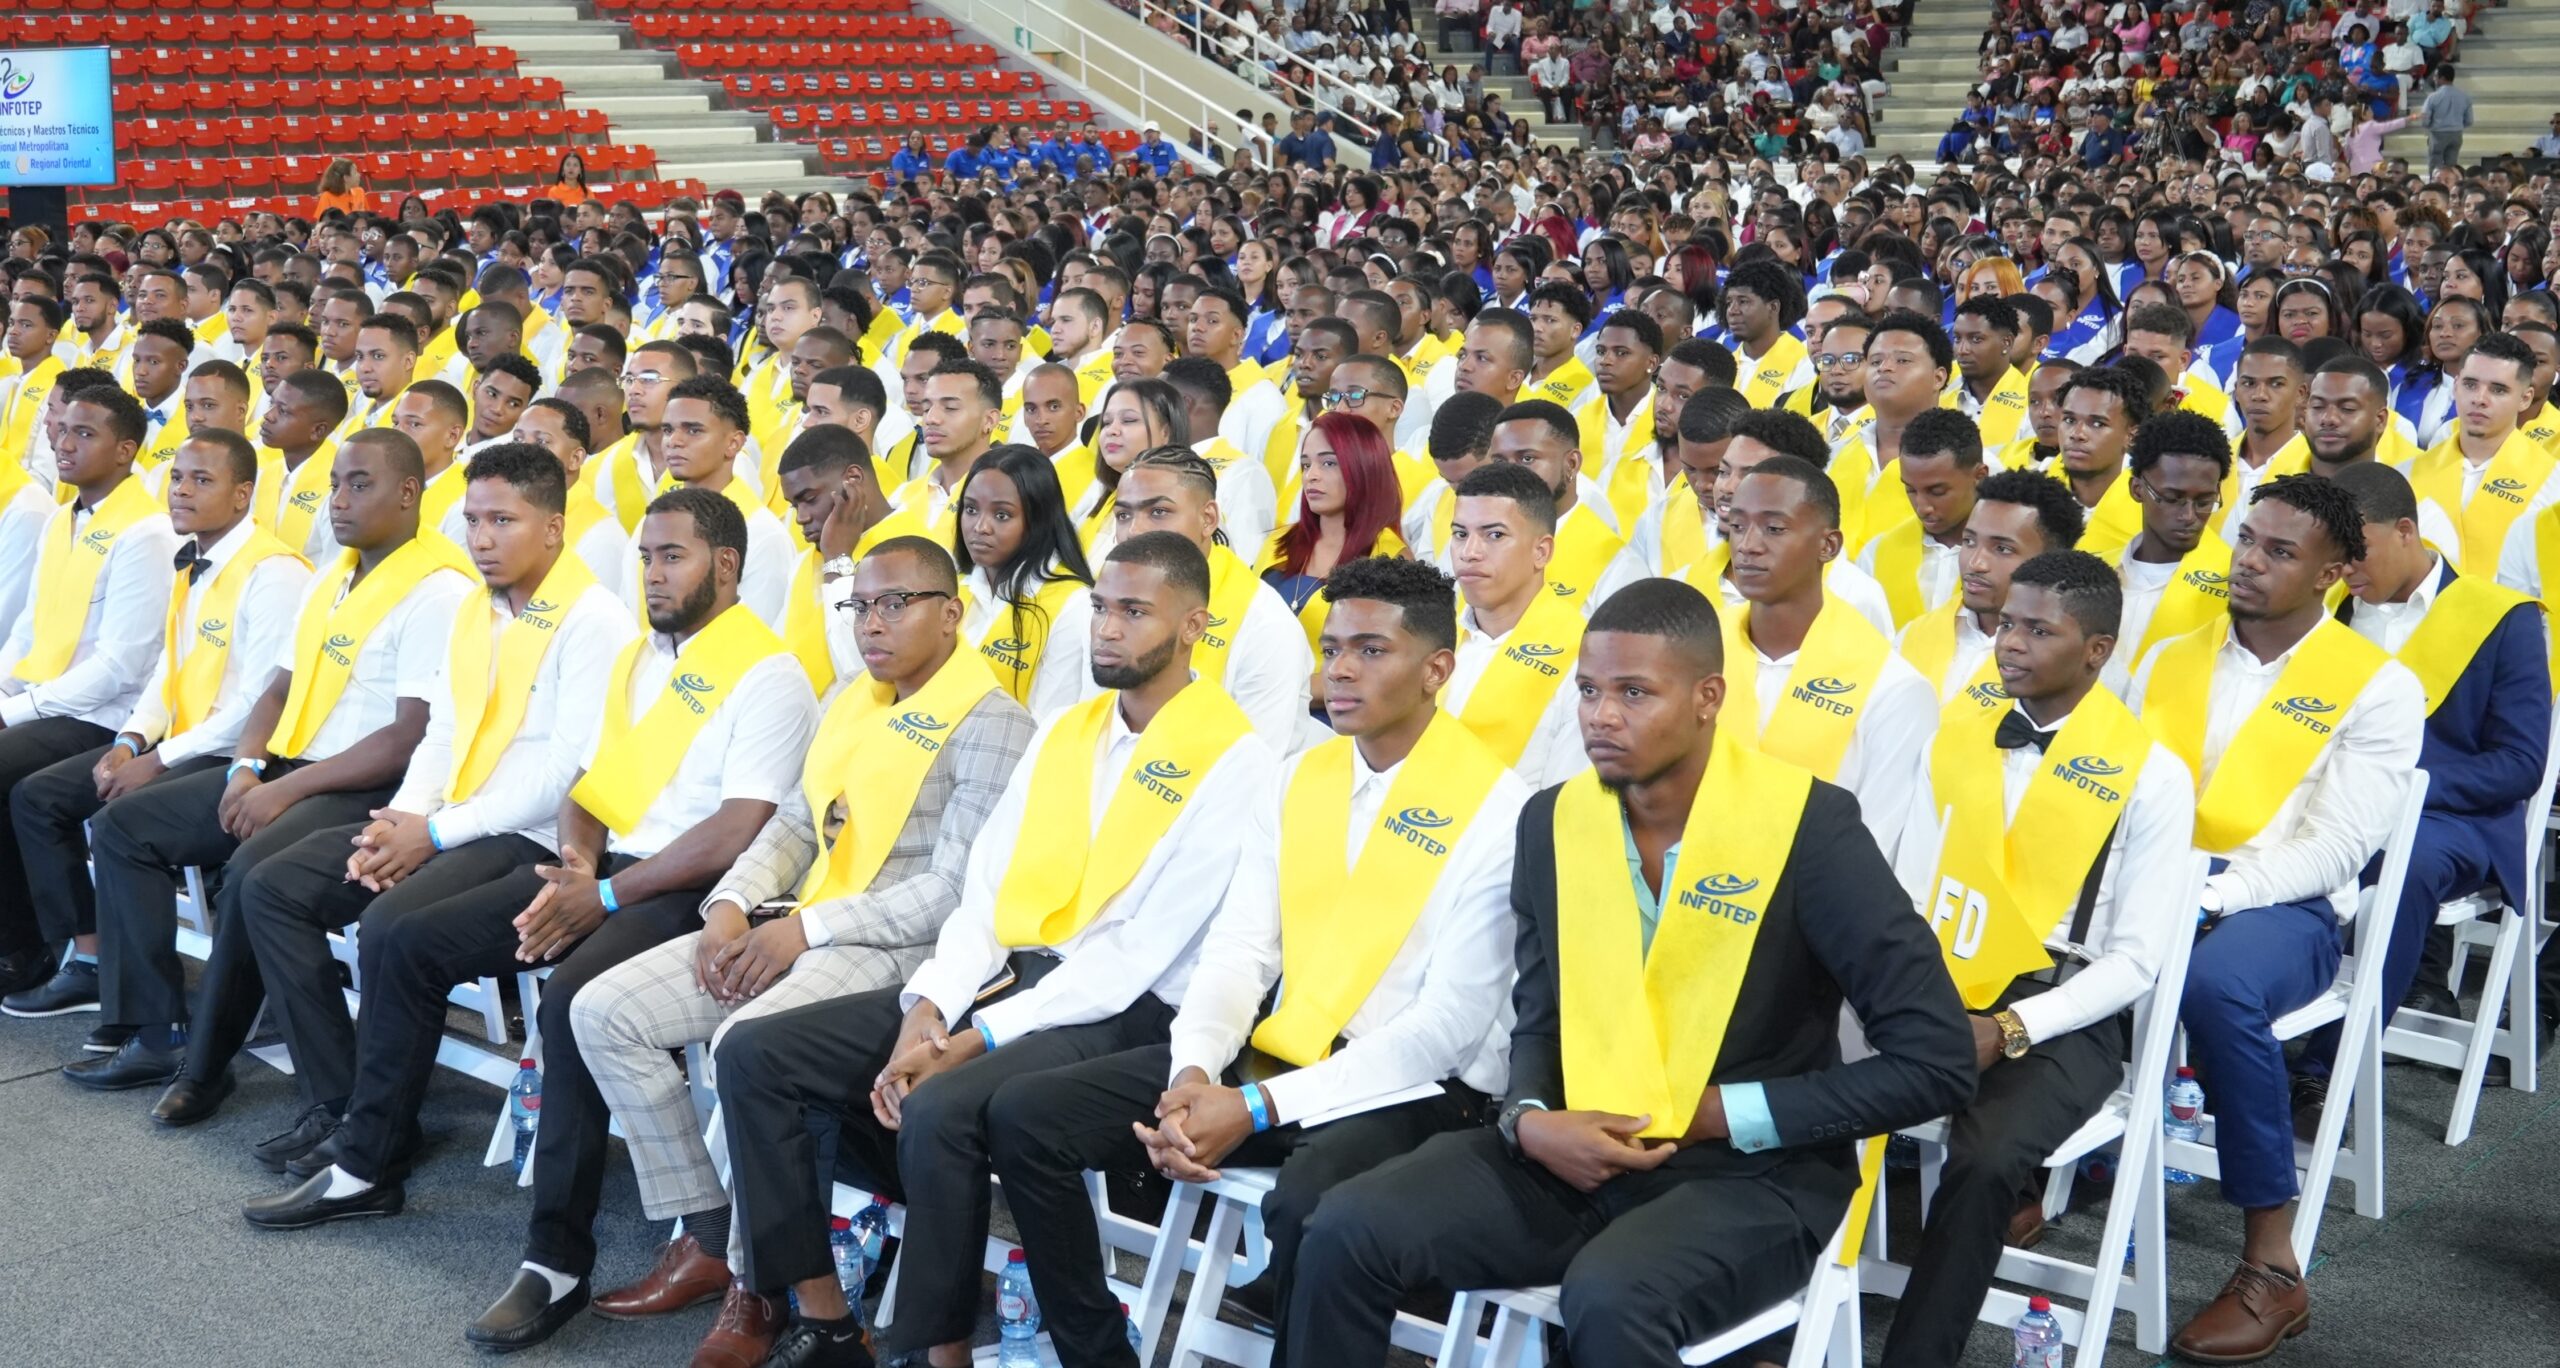 REPÚBLICA DOMINICANA: Infotep anuncia la celebración de graduación nacional de técnicos y maestros técnicos; más de 5,500 egresados serán acreditados